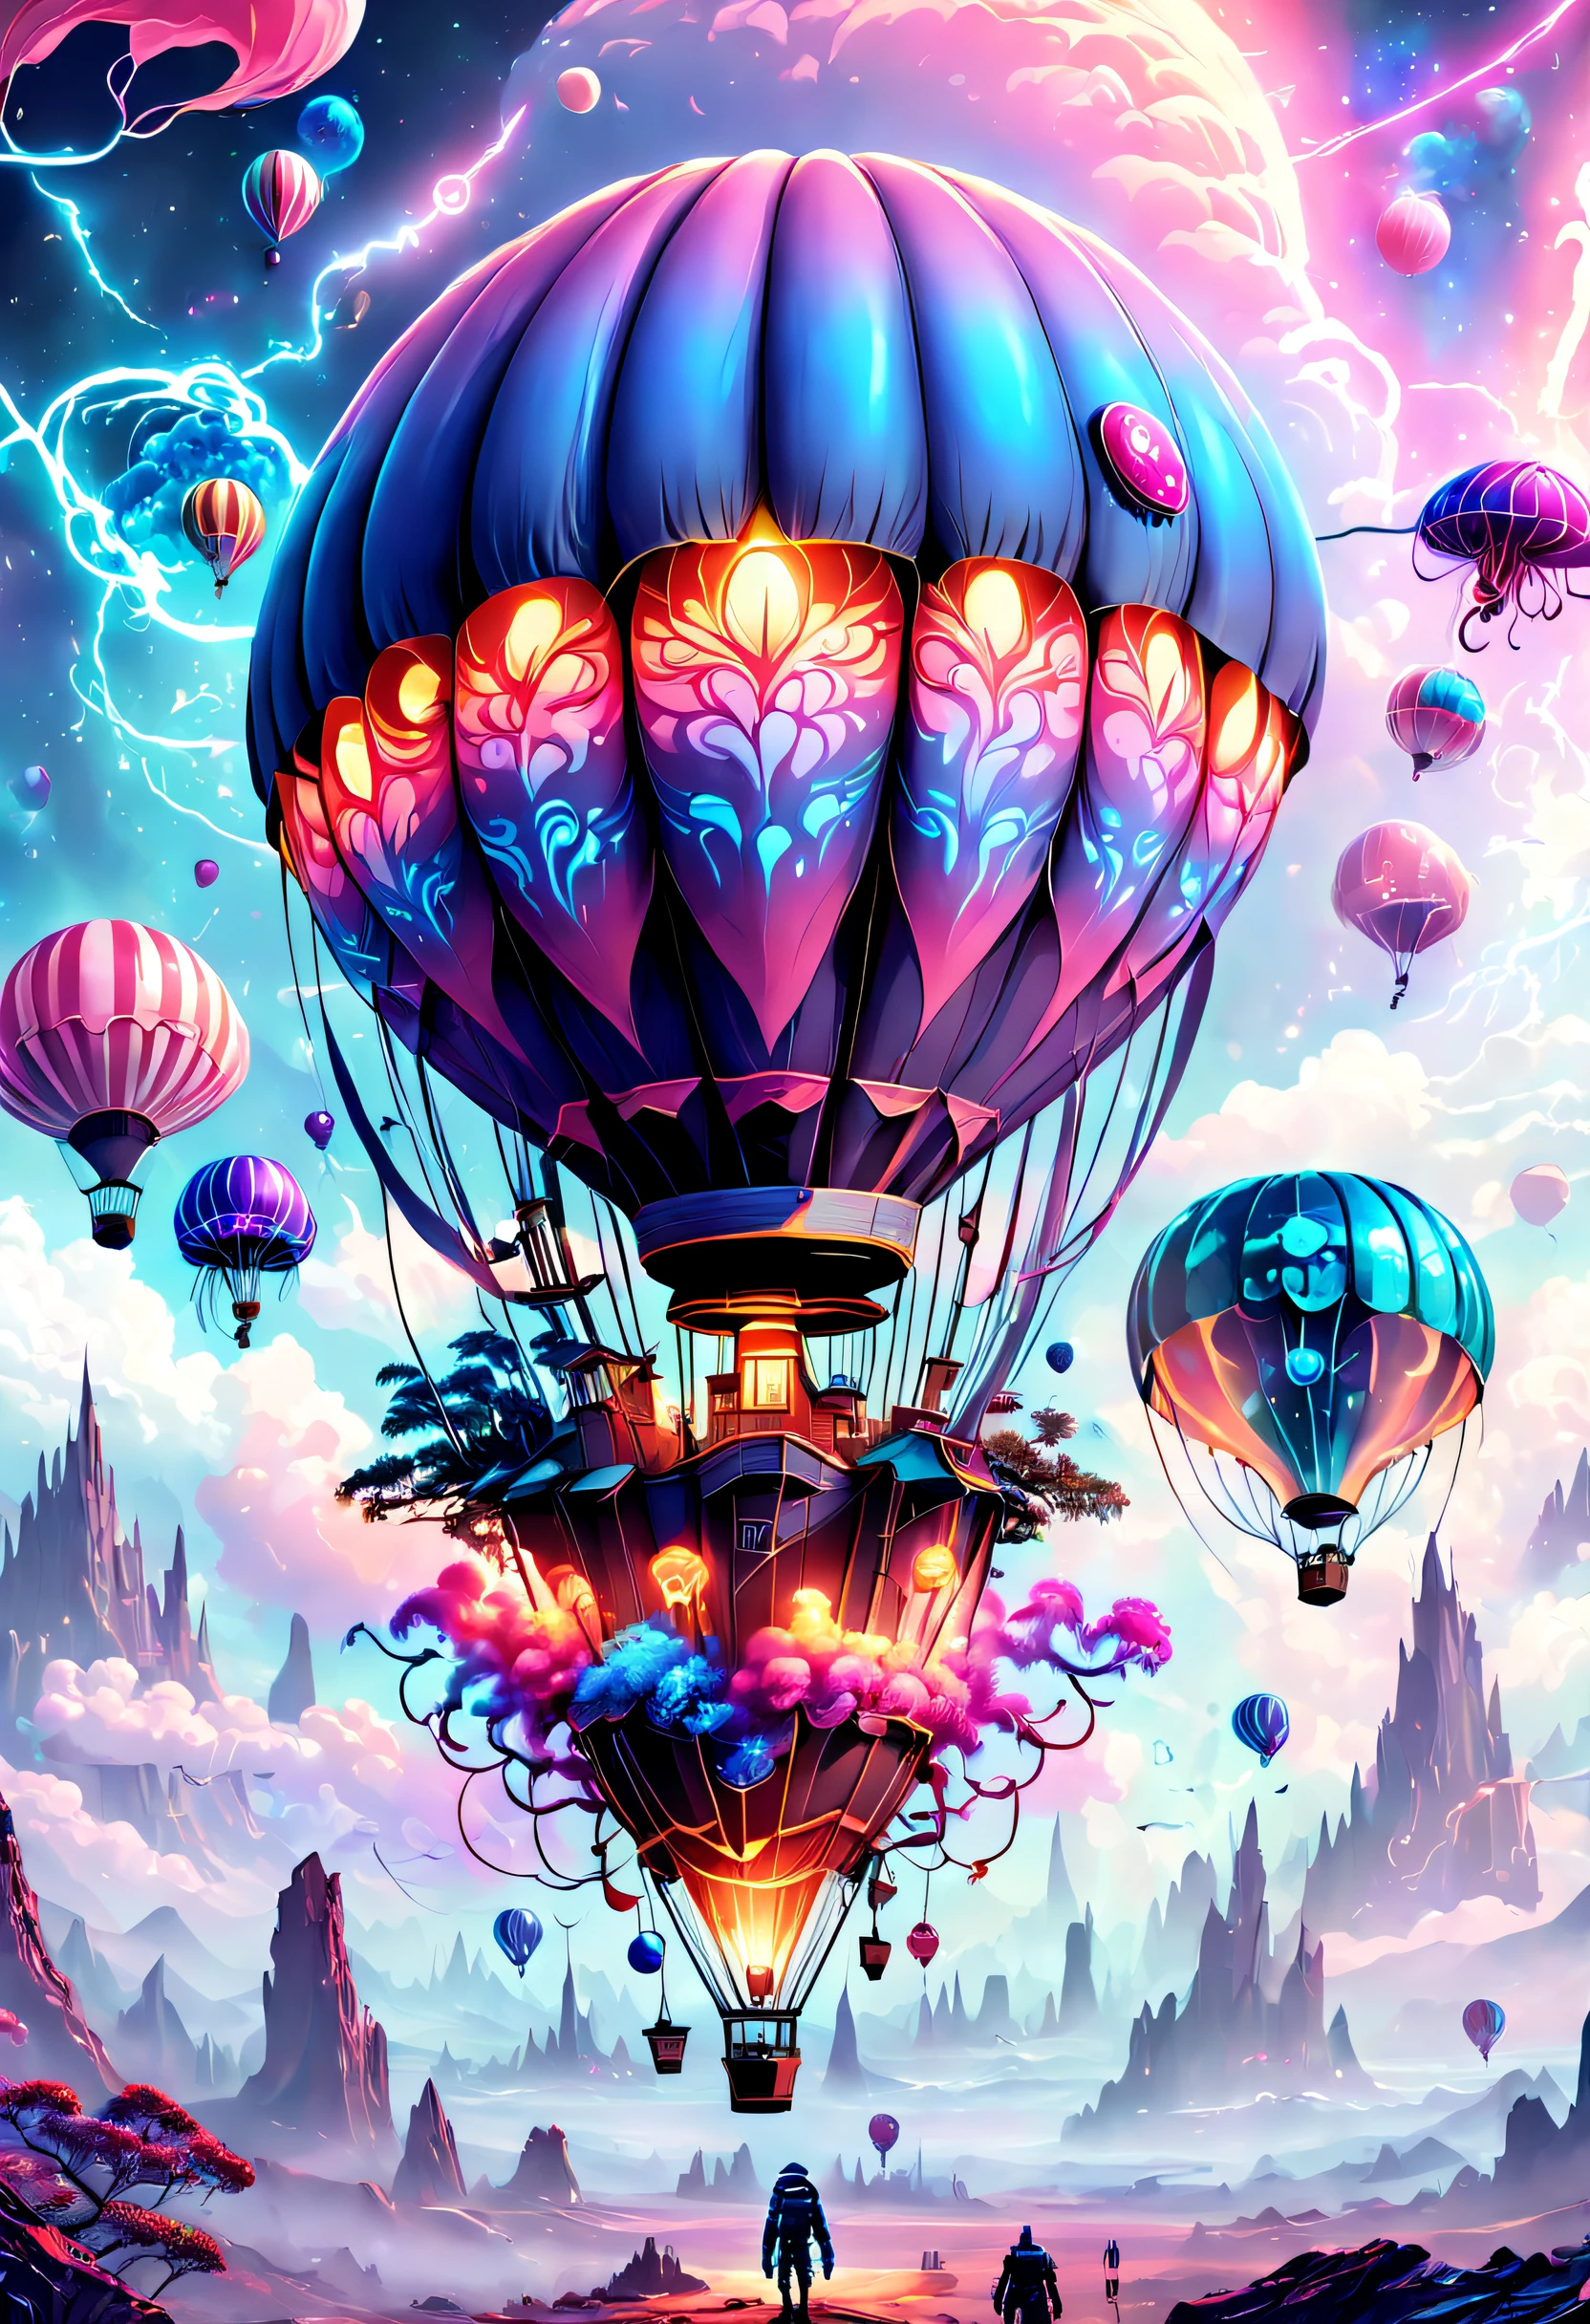 （（杰作，最好的品质）），精美的 8K 超高清专业照片, 清晰聚焦, 在一个令人惊叹的幻想世界中, 未来城市上空的热气球，复古赛博朋克，奇怪的热气球,丰富多彩的,可爱水母形状的热气球，在云里,美丽的天空,超现实主义,史诗般的梦想,童话世界,插图,高质量,3D 渲染,极其详细,真实感,鲜艳的色彩,令人惊叹的灯光，解剖正确，星际穿越，无尽空间，透明的，景深 精美空间图像场景，史诗般的未来科幻小说，8K 精细数字艺术, arstation 和 beeple 高度, 保罗·莱尔和 beeple, 惊人的壁纸, 类似 Beeple 的风格, epic fantasy sci fi 插图, 8k 高品质细节艺术, 丰富多彩的概念艺术, 奇幻绘景，可爱的, 详细的幻想数字艺术, 创辉数字幻想艺术, 4k 高度详细的数字艺术, 详细的数字 2D 幻想艺术, 超现实主义概念艺术, Beeple 和 Jeremiah Ketner, 异想天开的幻想风景艺术, 幻想城市景观